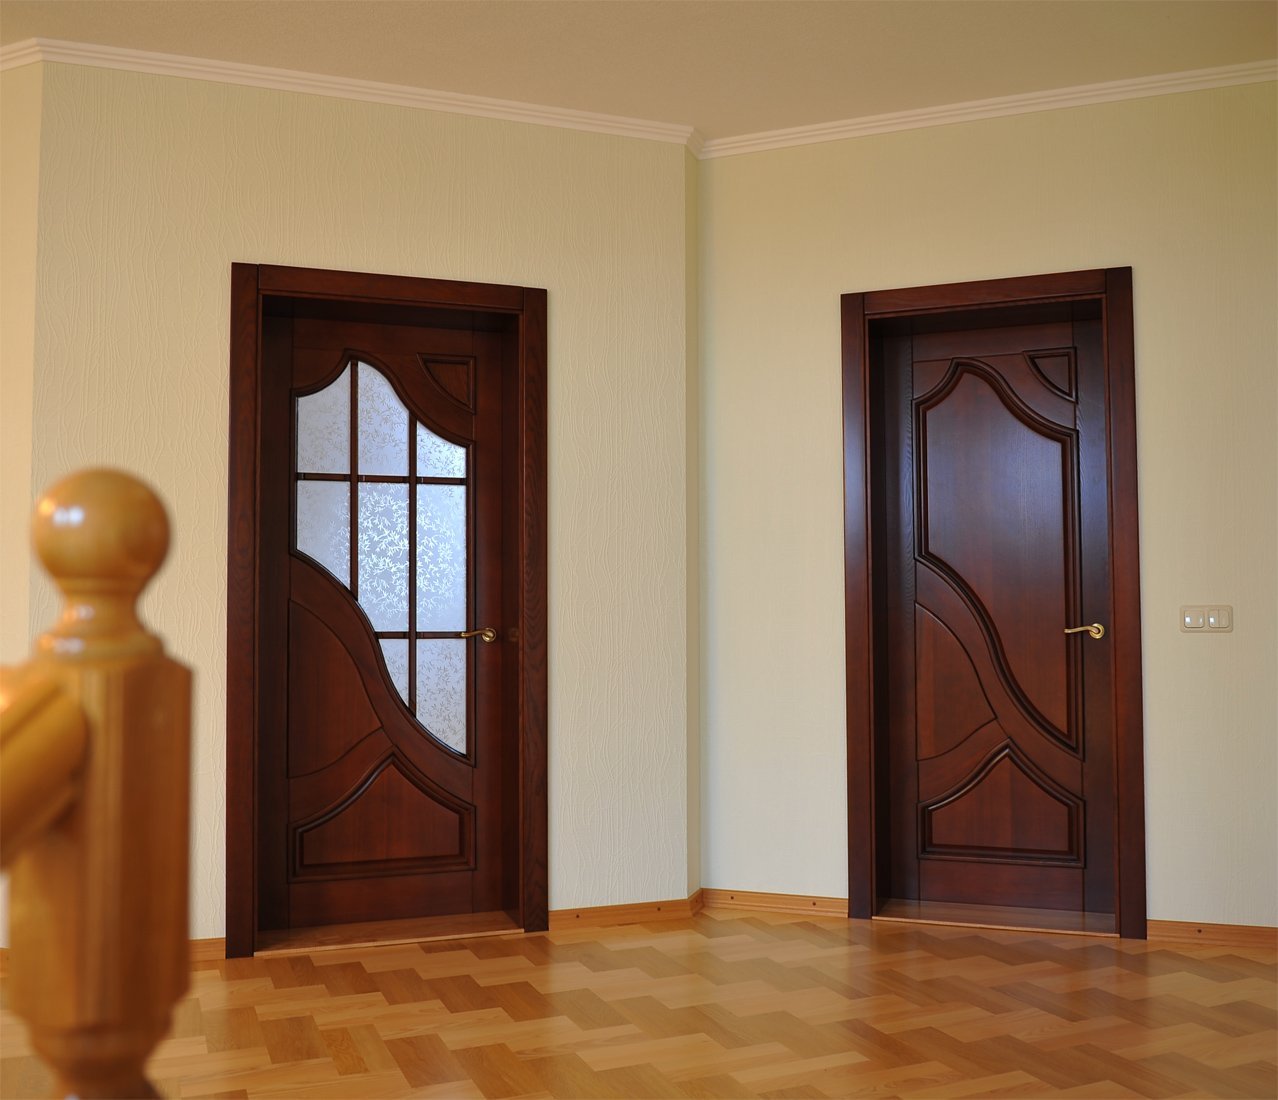 Красивые двери в квартире. Двери в интерьере. Межкомнатные двери. Деревянные двери межкомнатные. Красивые деревянные двери.